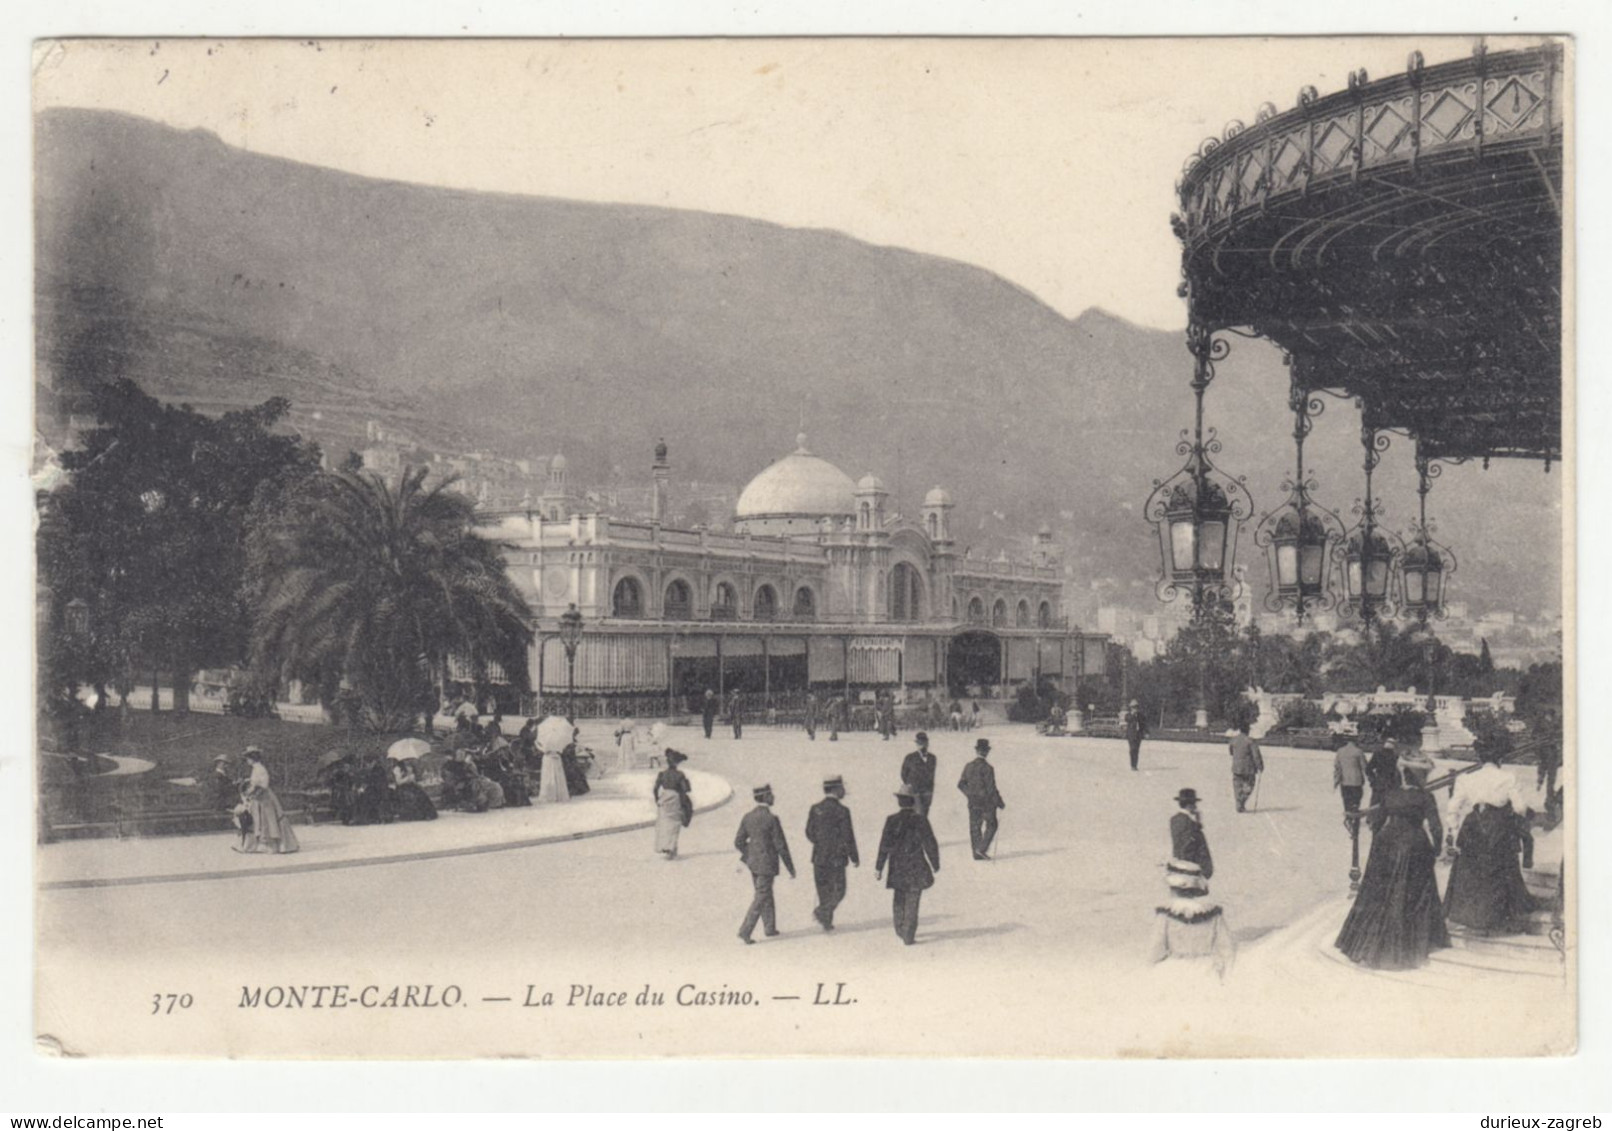 Monte-Carlo La Place Du Casino Old Postcard Posted 190? B240503 - Monte-Carlo